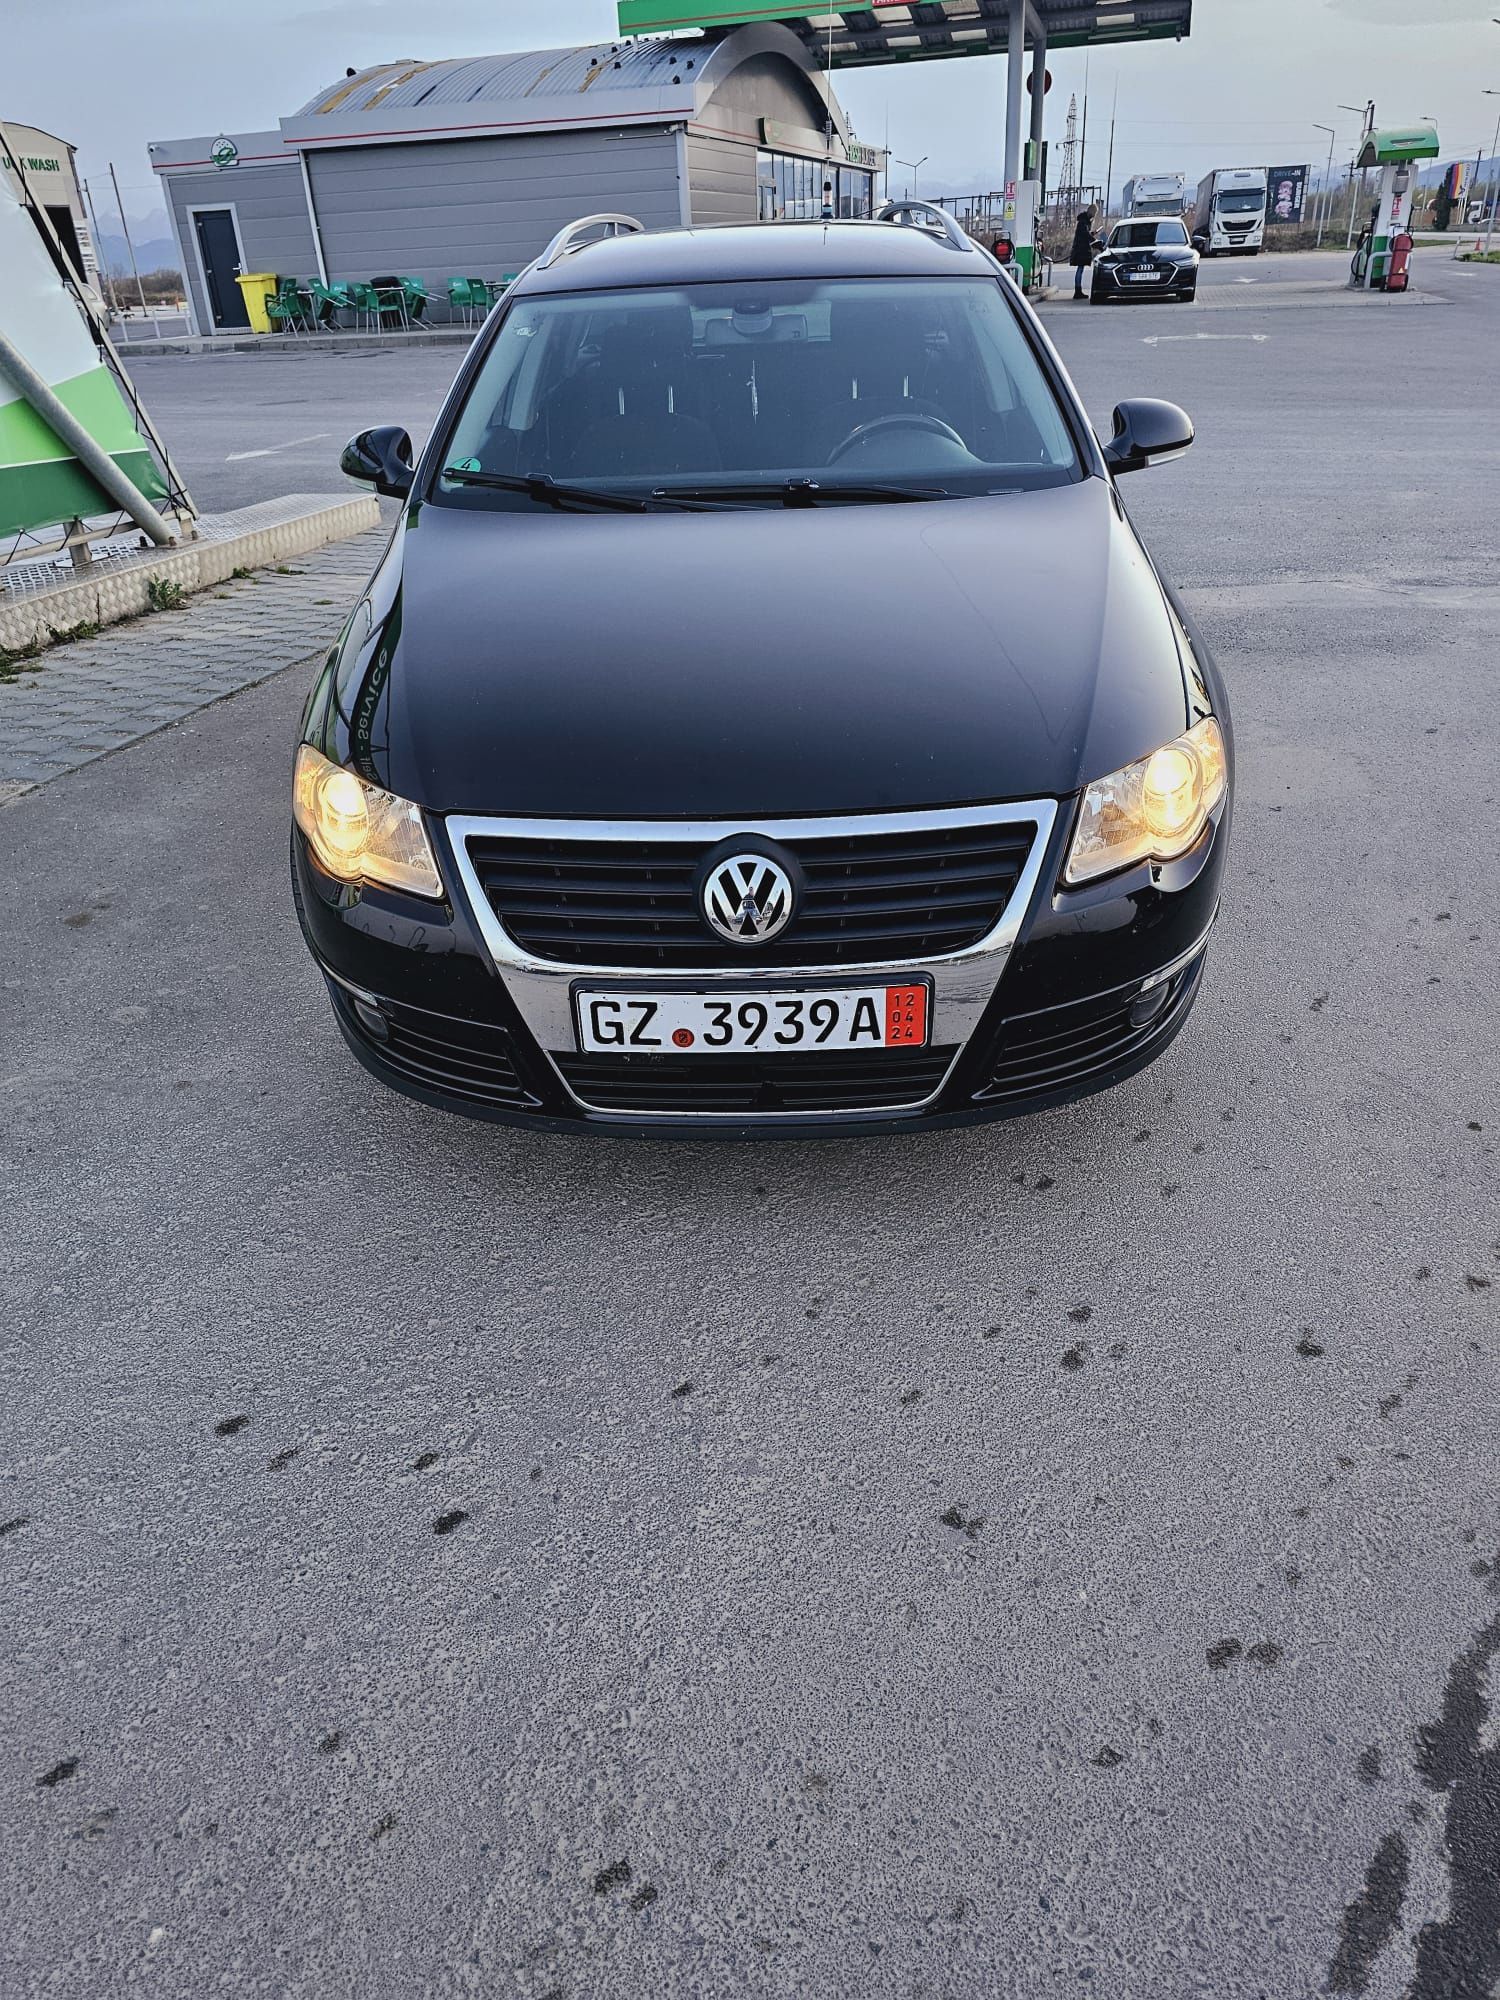 Vând Volkswagen Passat b6 an 2007 recent import